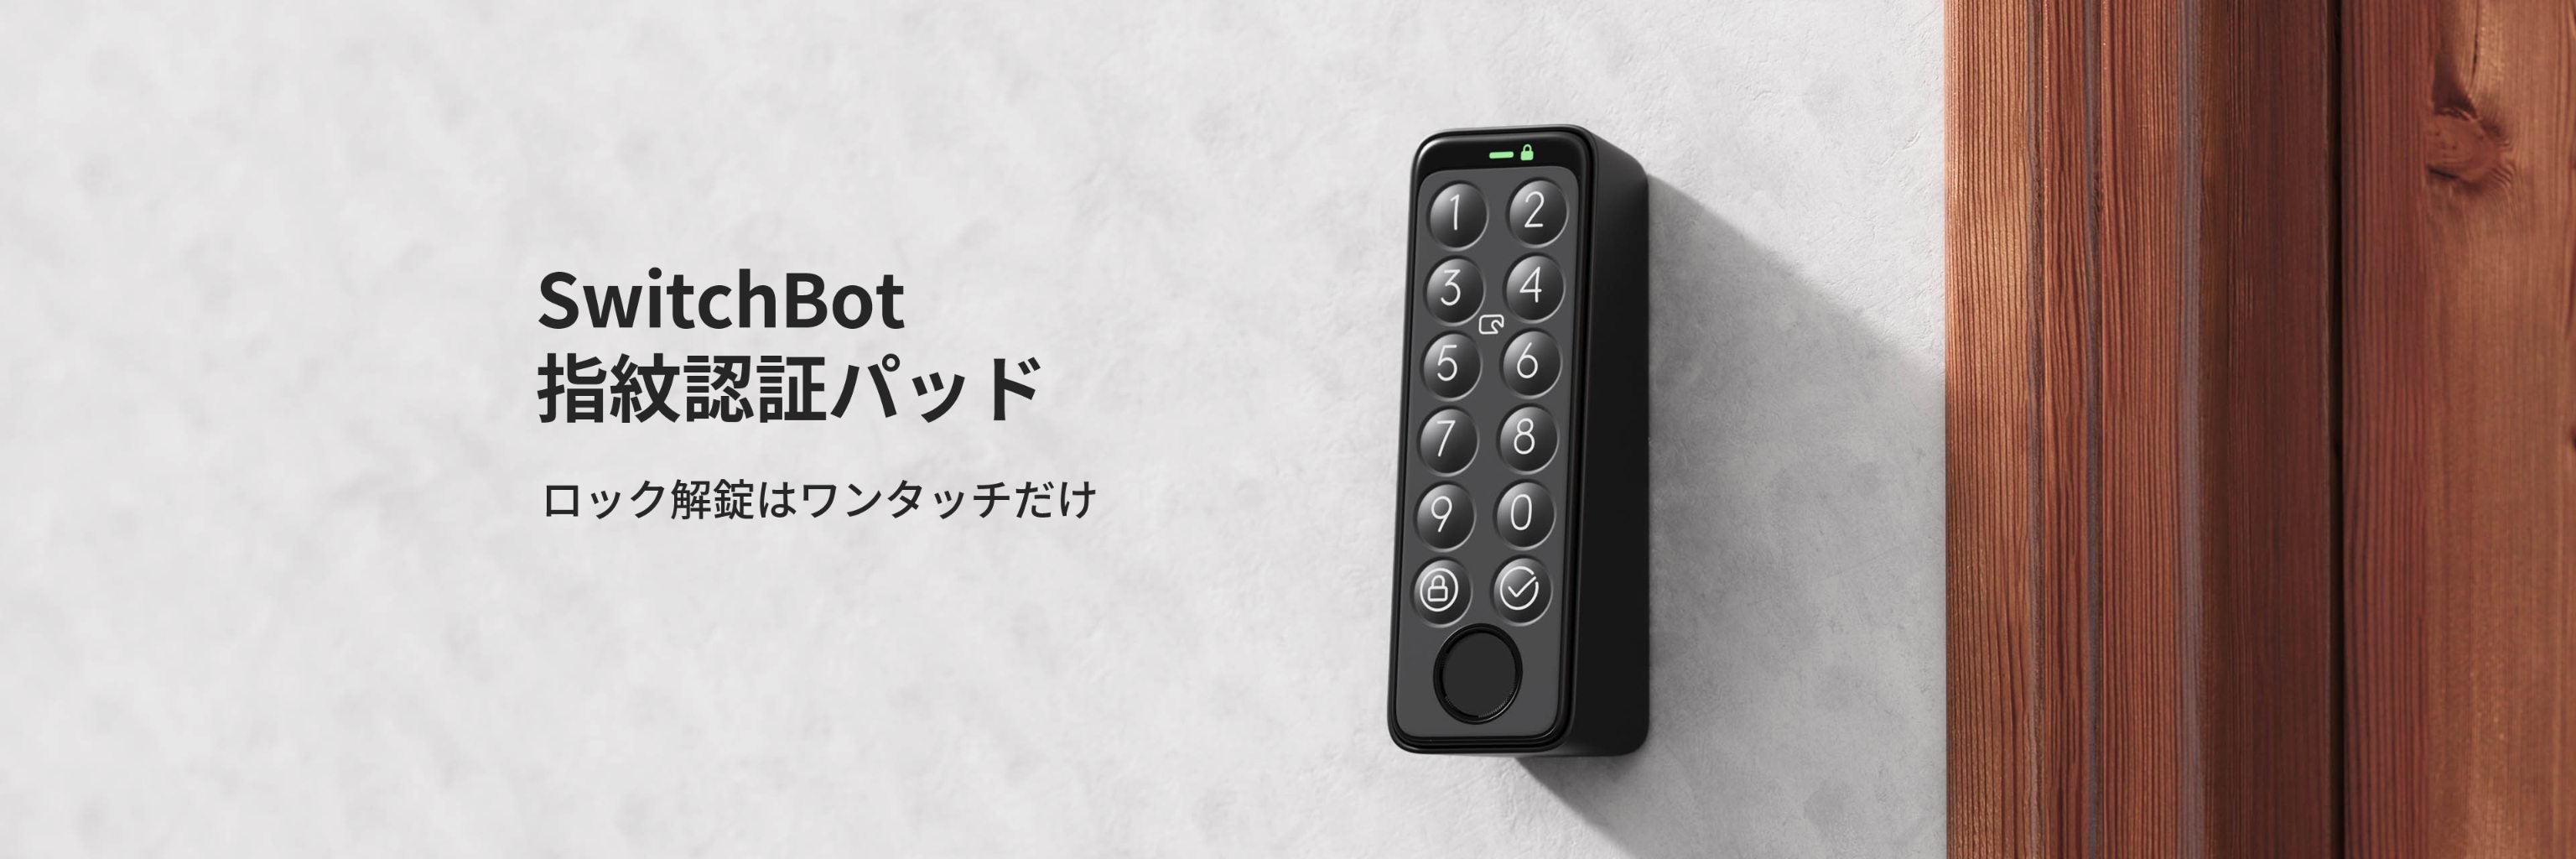 送料無料/新品】 SwitchBot スマートロック 指紋認証パッド セット